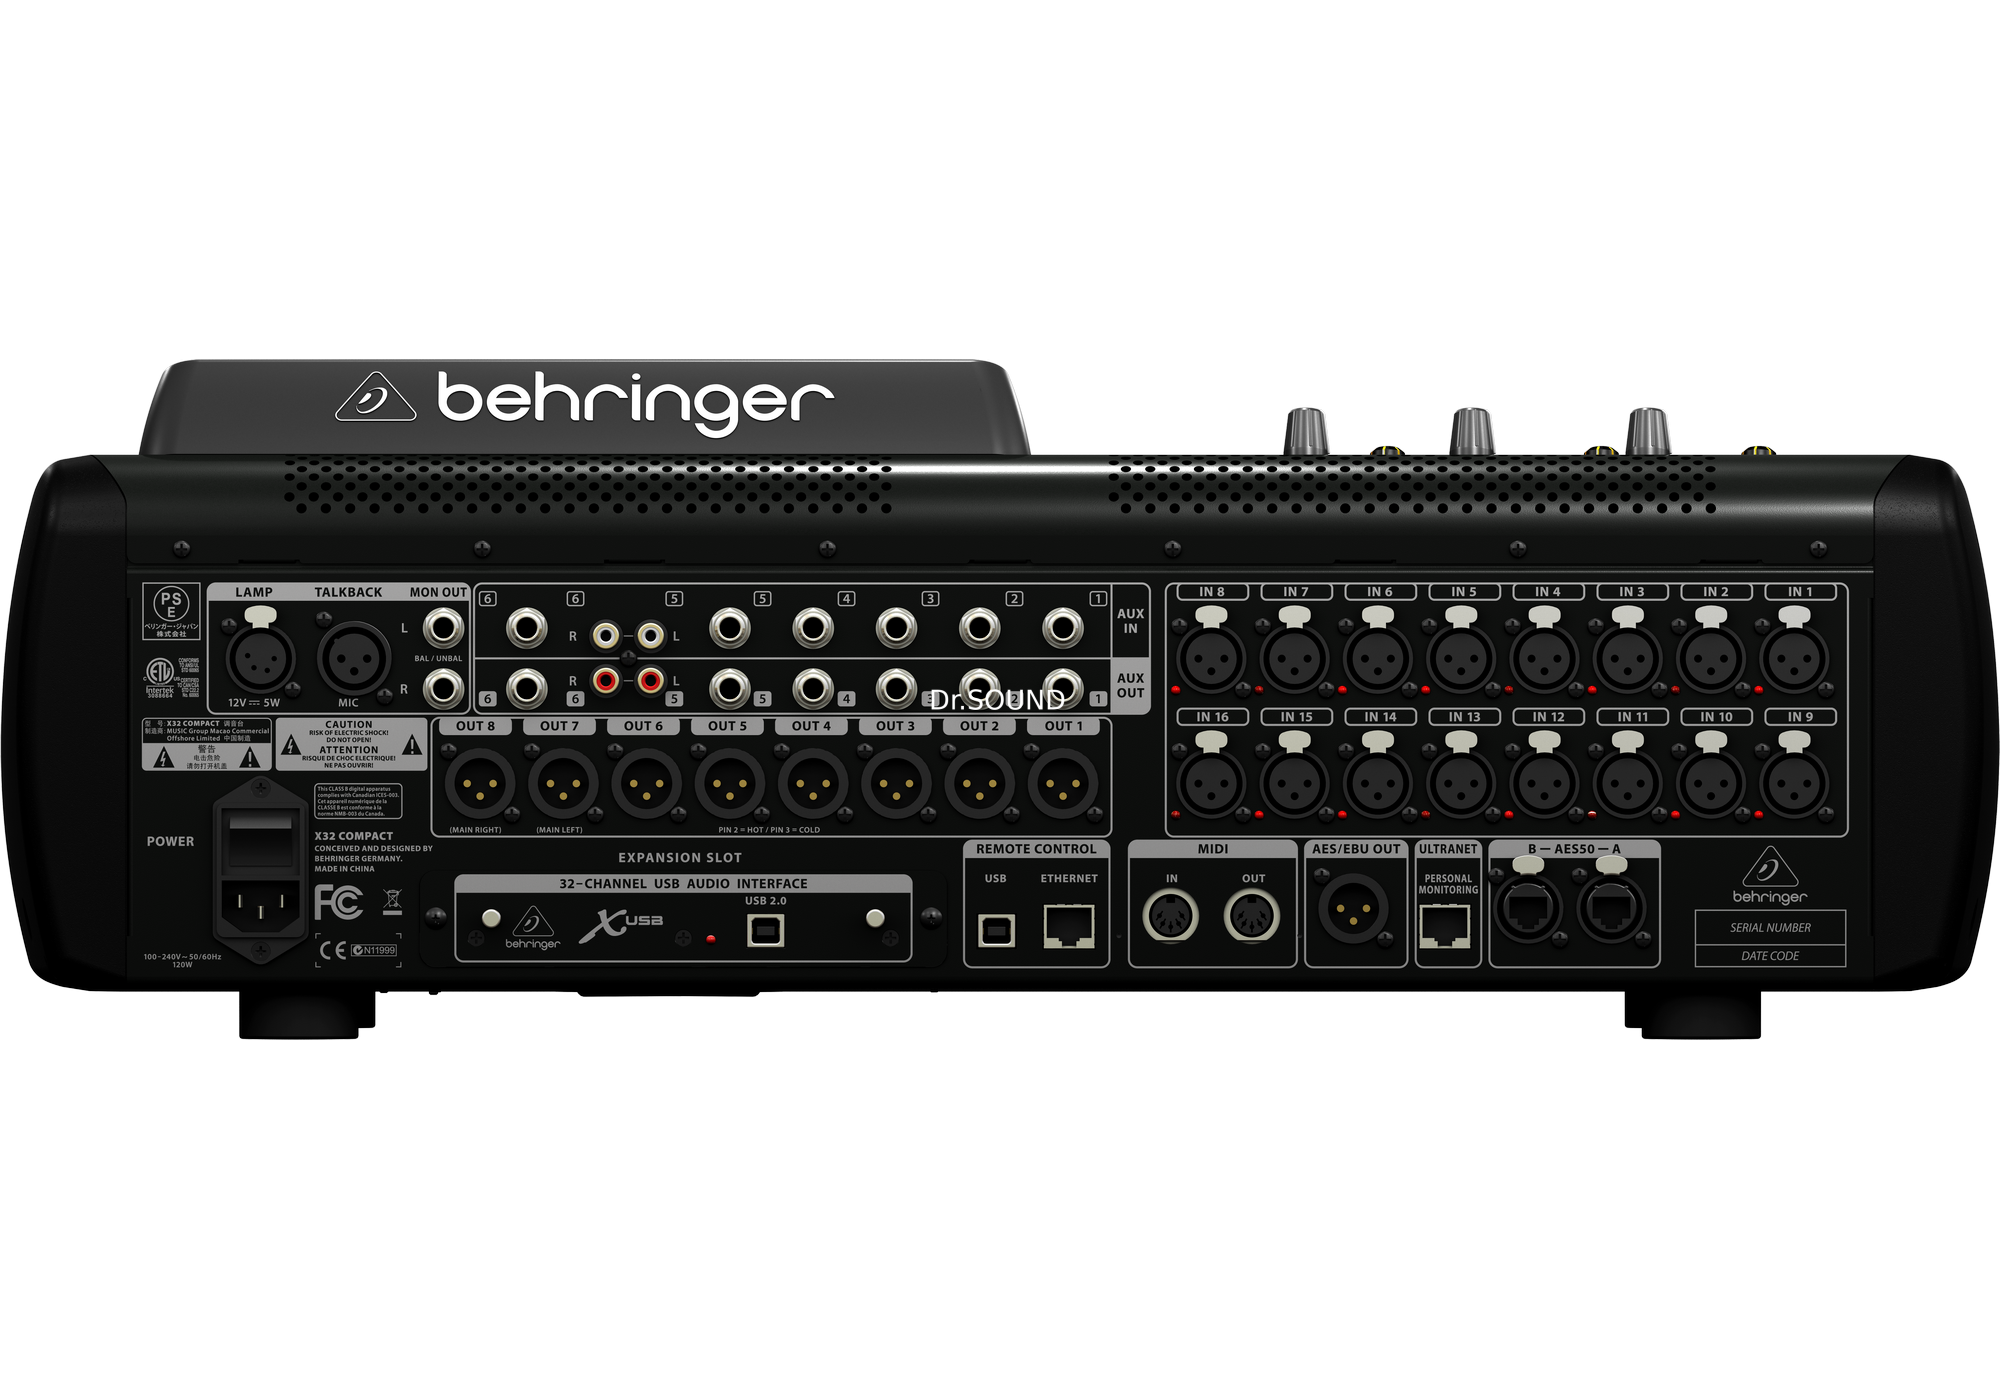 Микшерный пульт behringer x32. Цифровой пульт Behringer x32 Compact. Цифровой микшер Behringer x32. Цифровой пульт Беренджер х32. Цифровой микшер Behringer x32 Compact.